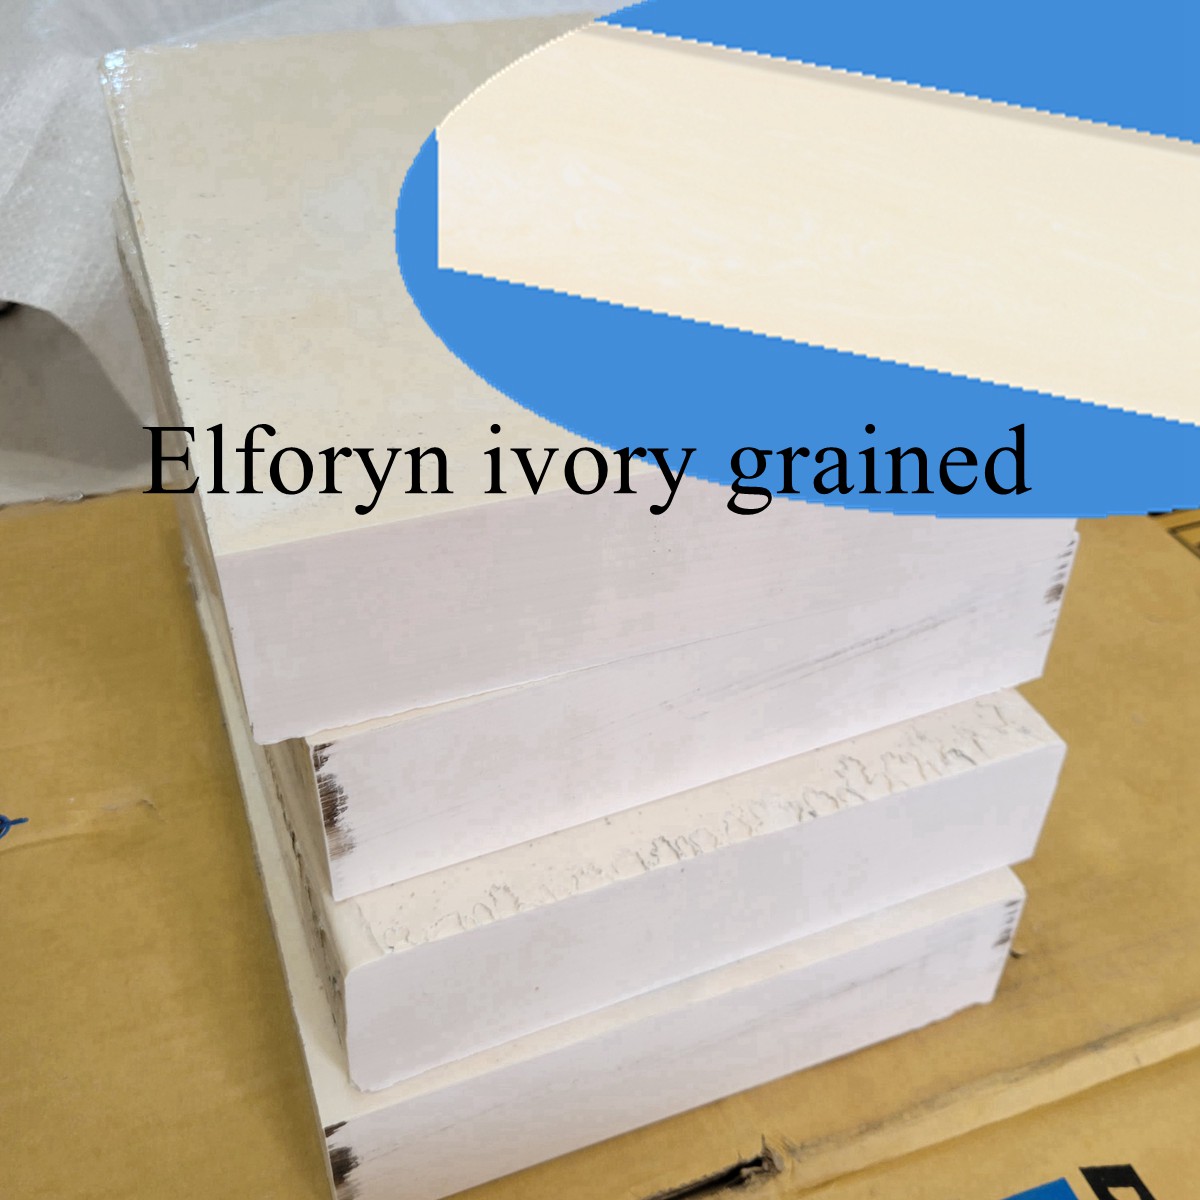 Elforyn Ivory Granied